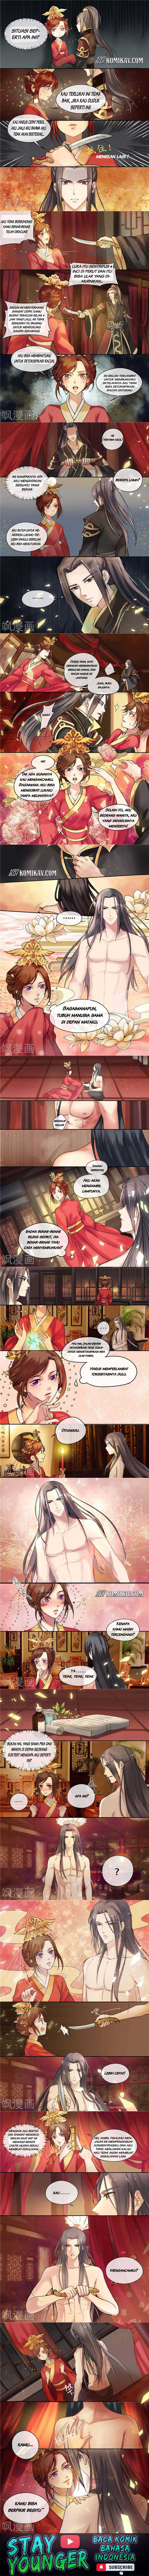 Genius Poison Princess Consort Han Yun Xi Chapter 6